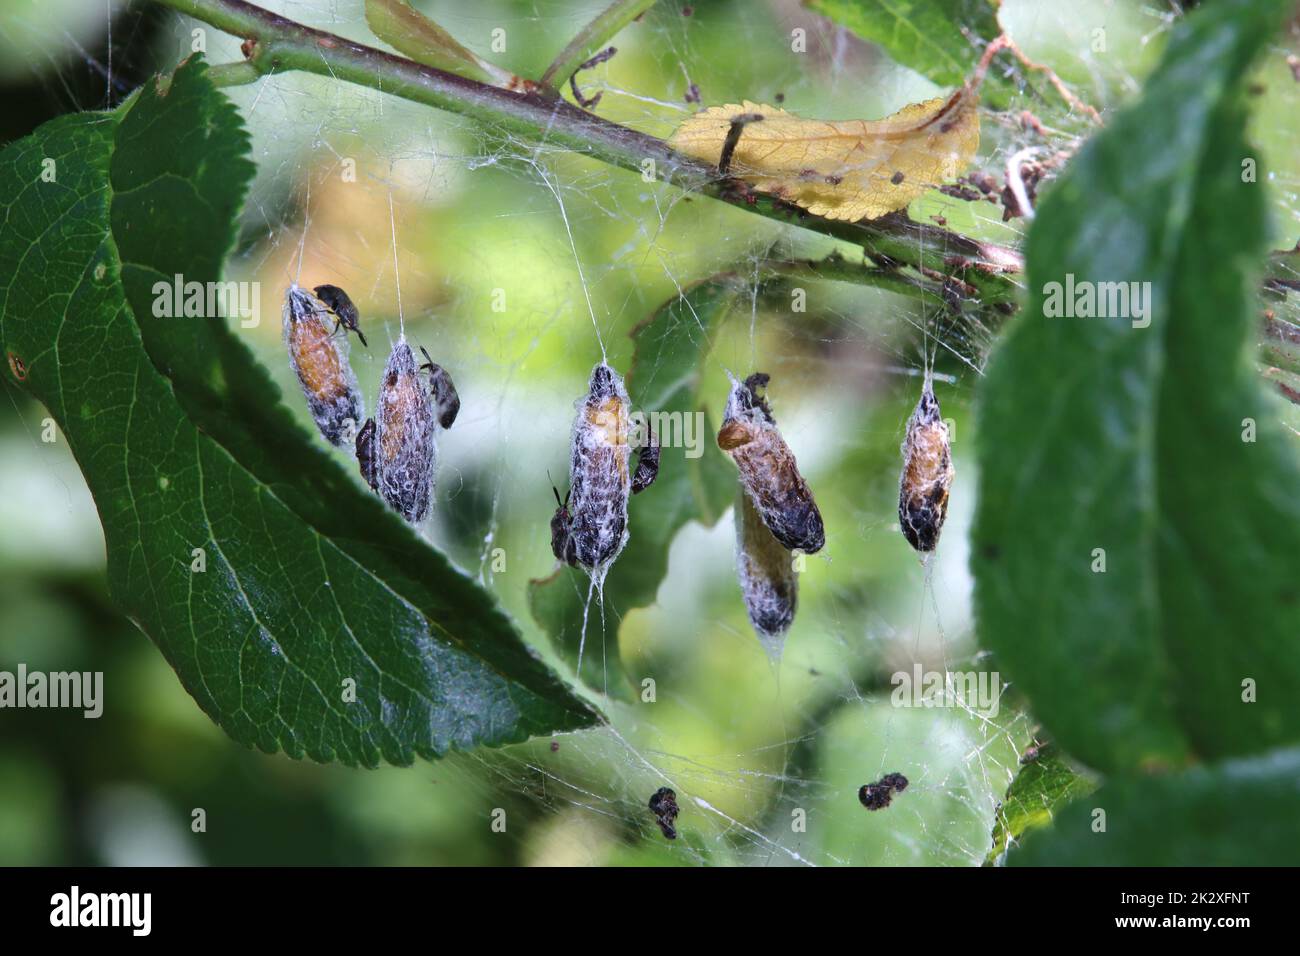 Puppen der Pflaumen-Gespinstmotte (Yponomeuta padella), auf denen sich rÃ¤uberische Weichwanzen (Atractotomus mali) befinden Foto Stock